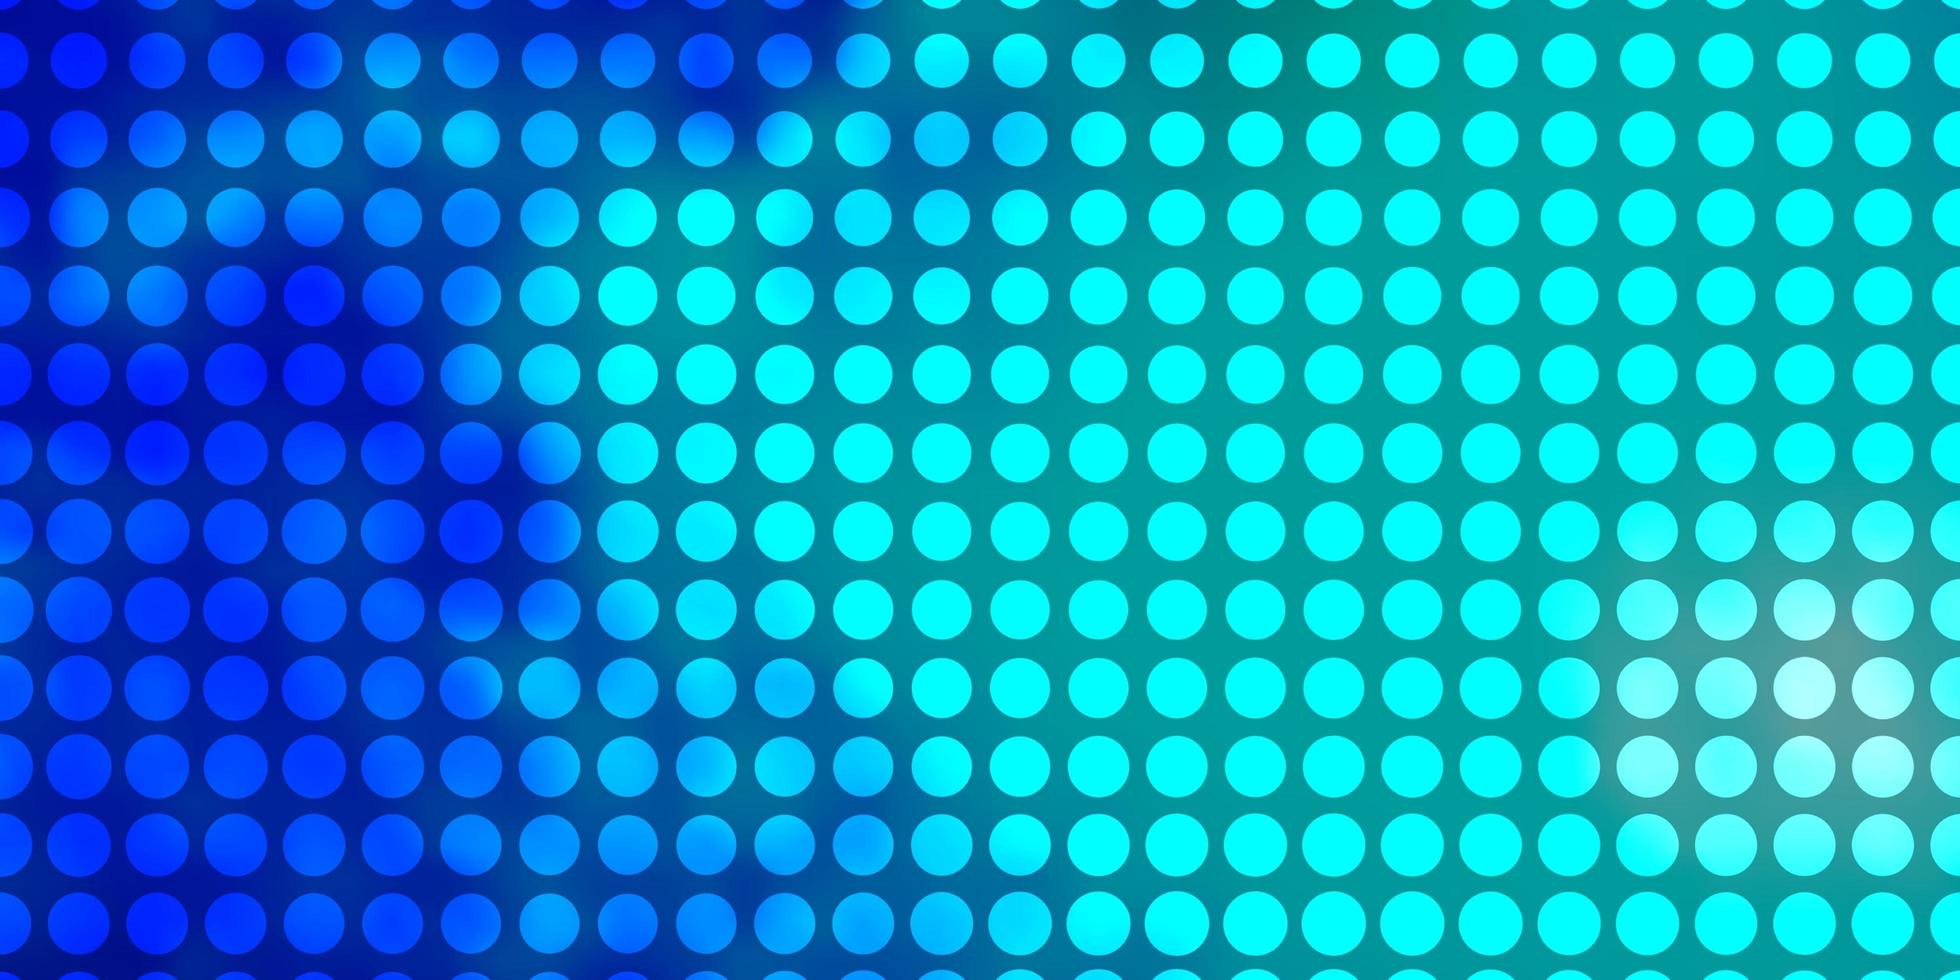 layout de vetor azul e verde claro com círculos.